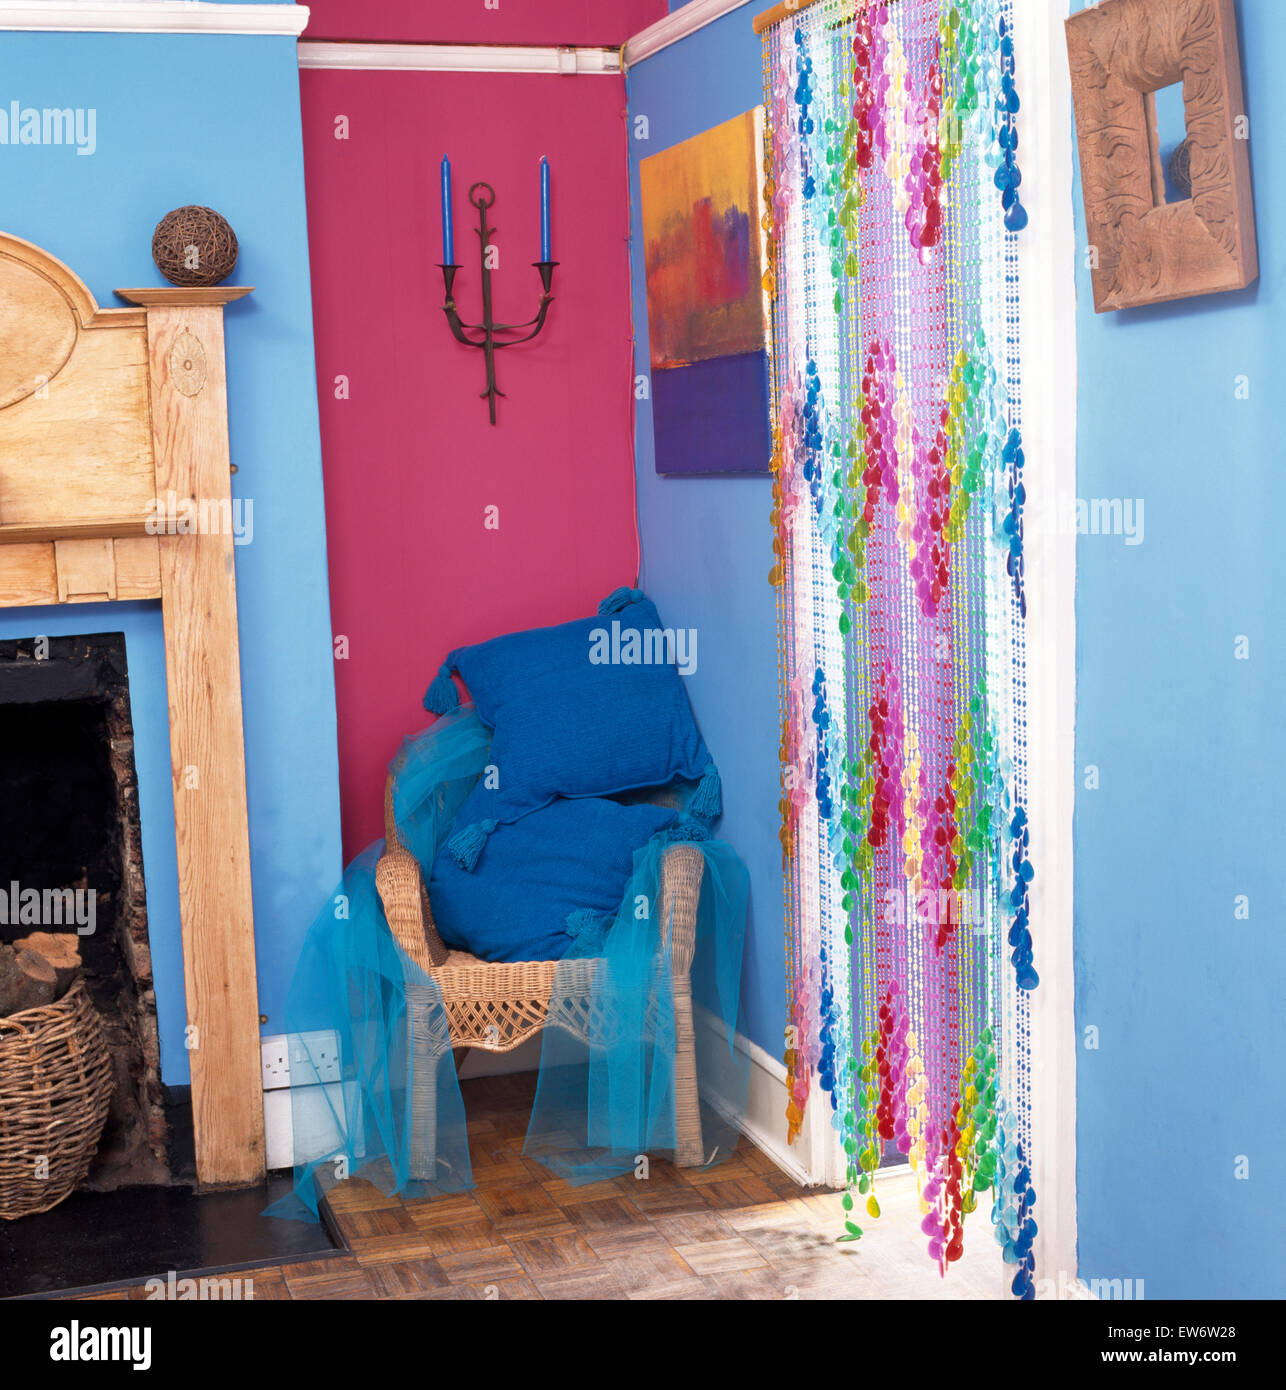 Rideau de perles sur la porte en bleu style années 90 Économie avec coussins bleu sur wicker chair Banque D'Images